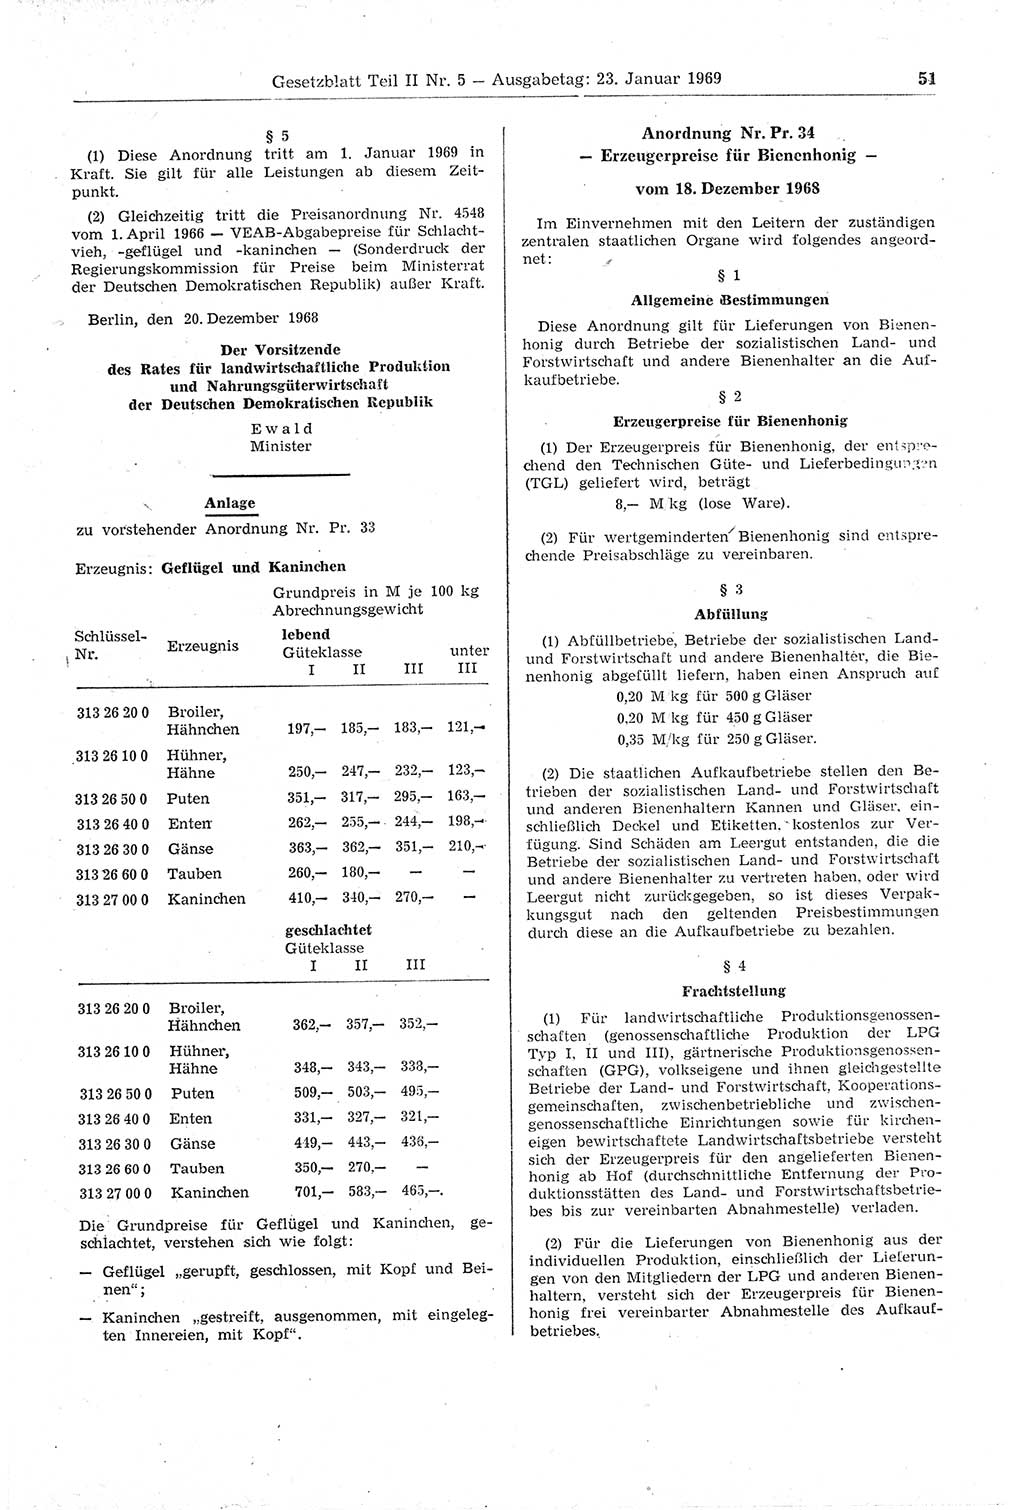 Gesetzblatt (GBl.) der Deutschen Demokratischen Republik (DDR) Teil ⅠⅠ 1969, Seite 51 (GBl. DDR ⅠⅠ 1969, S. 51)